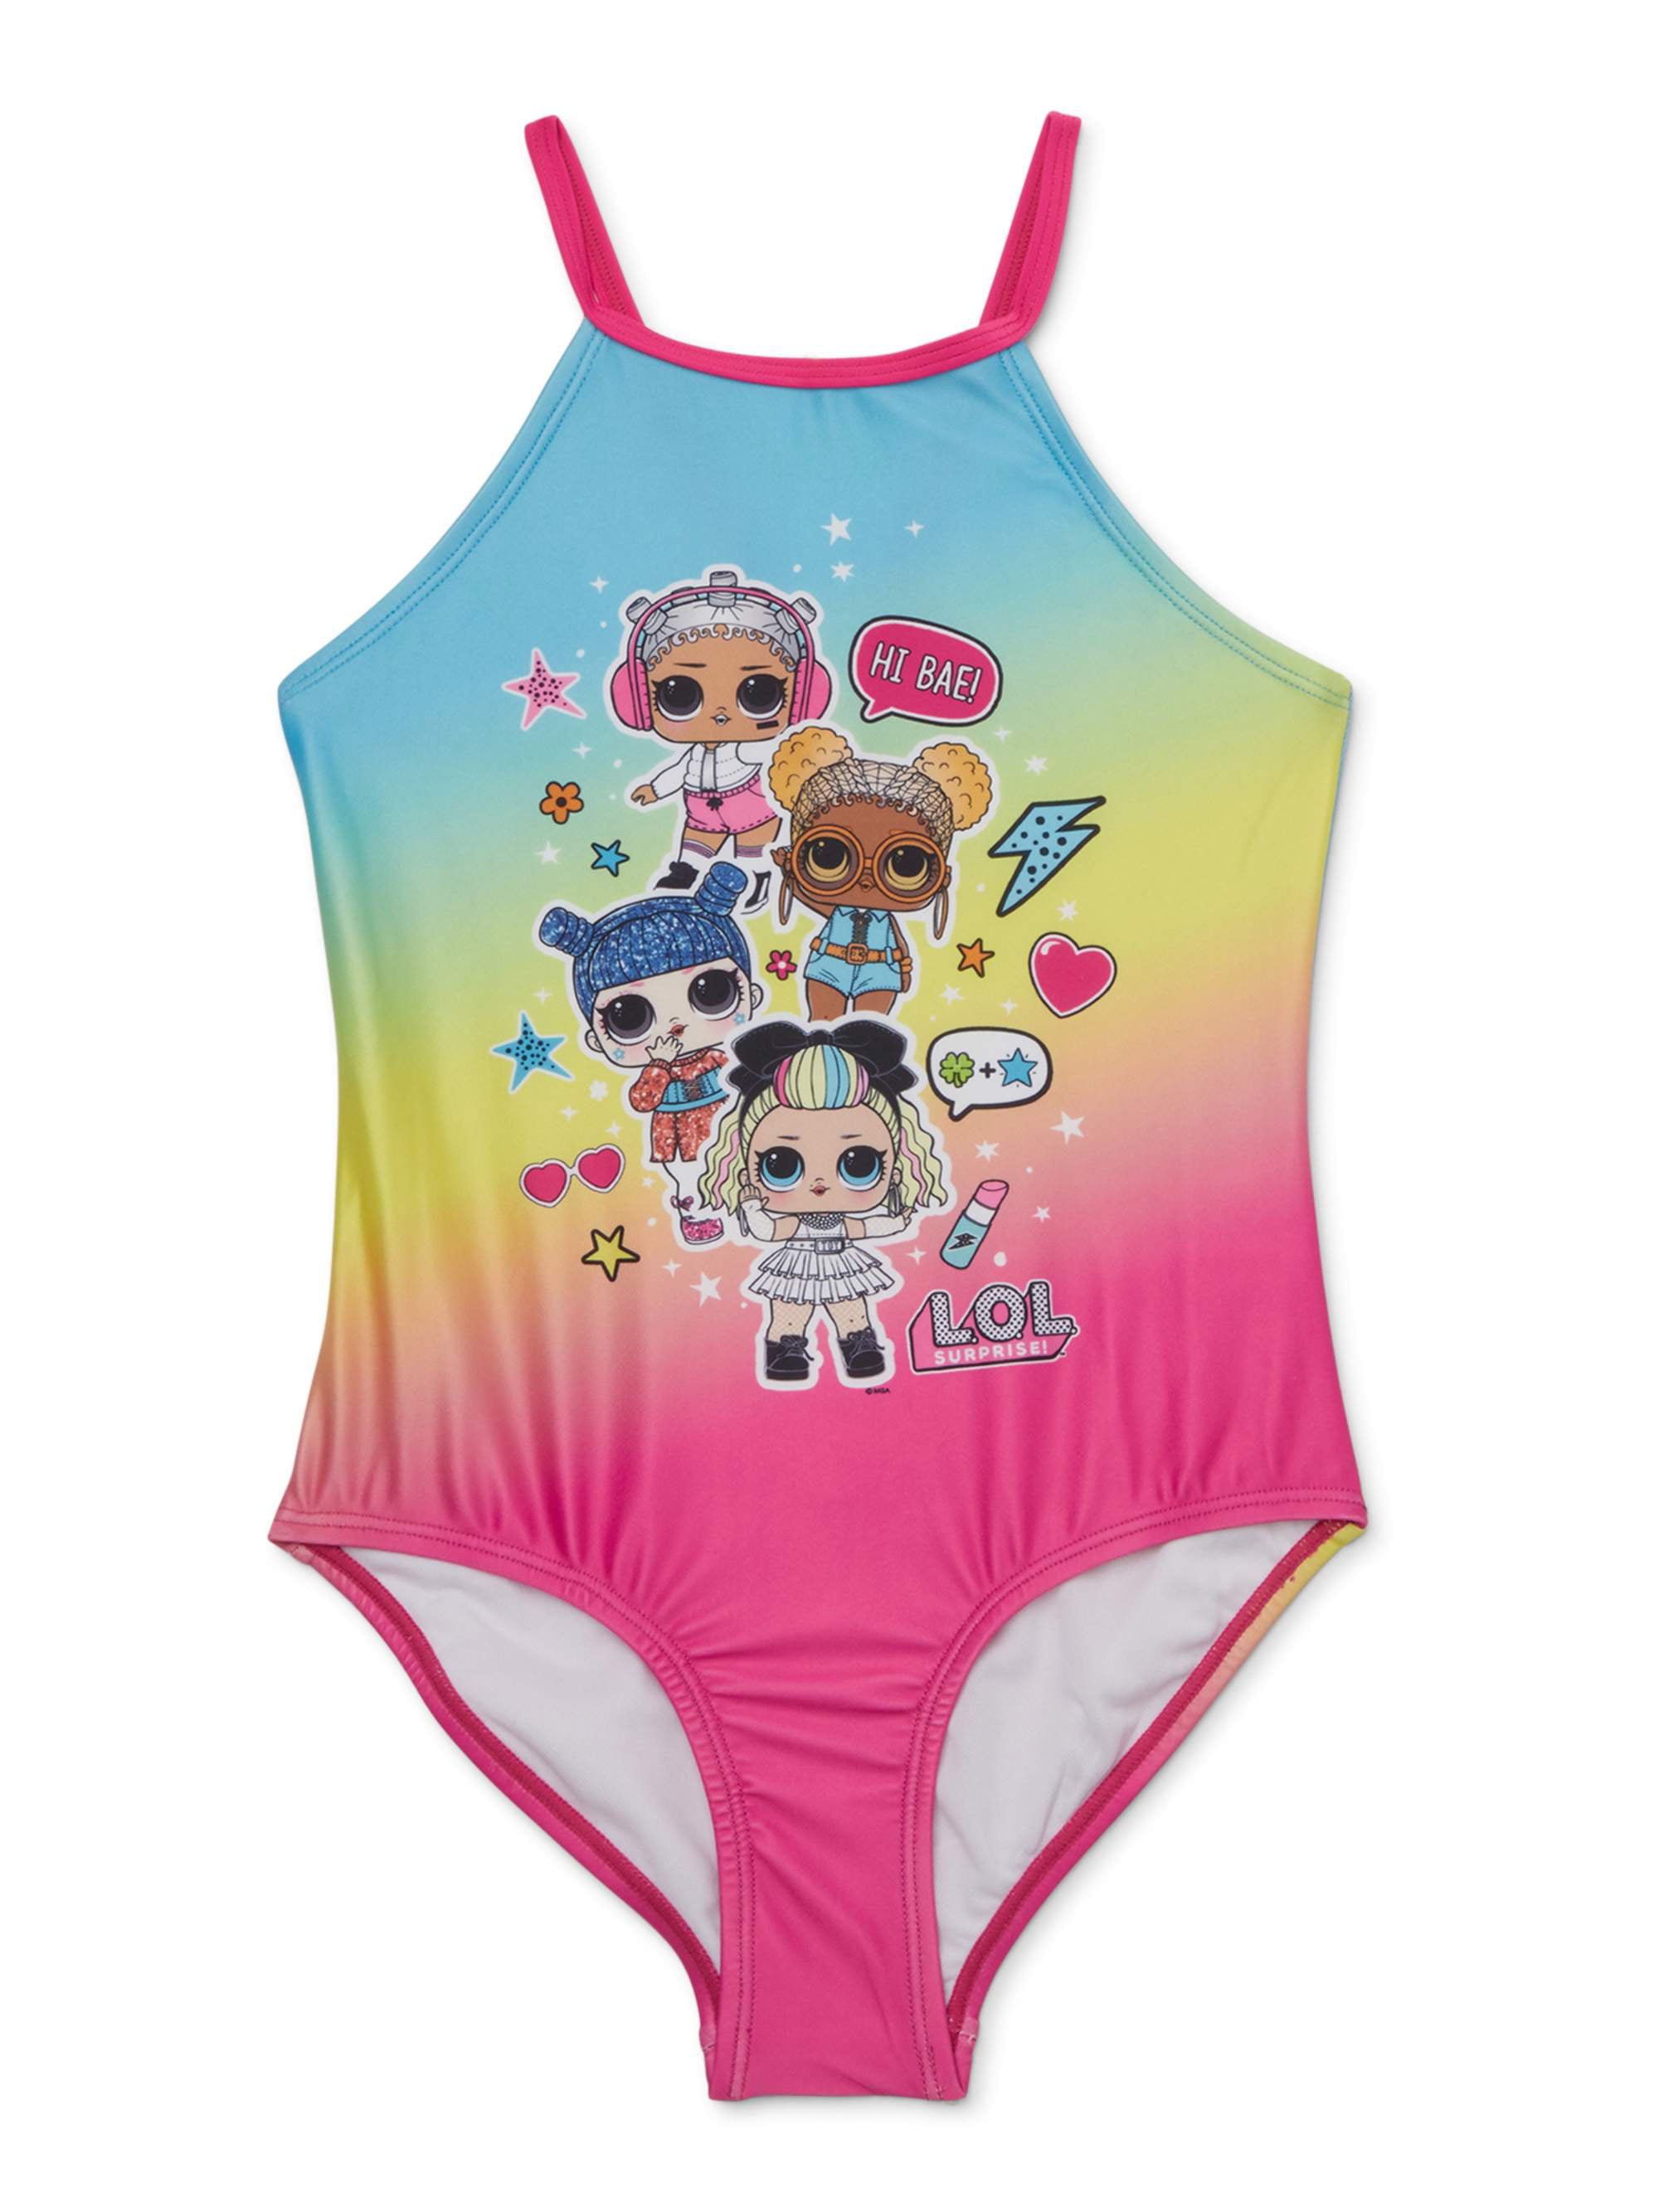 L O L Surprise L O L Surprise Girls 5 8 Rainbow One Piece Swimsuit Walmart Com Walmart Com